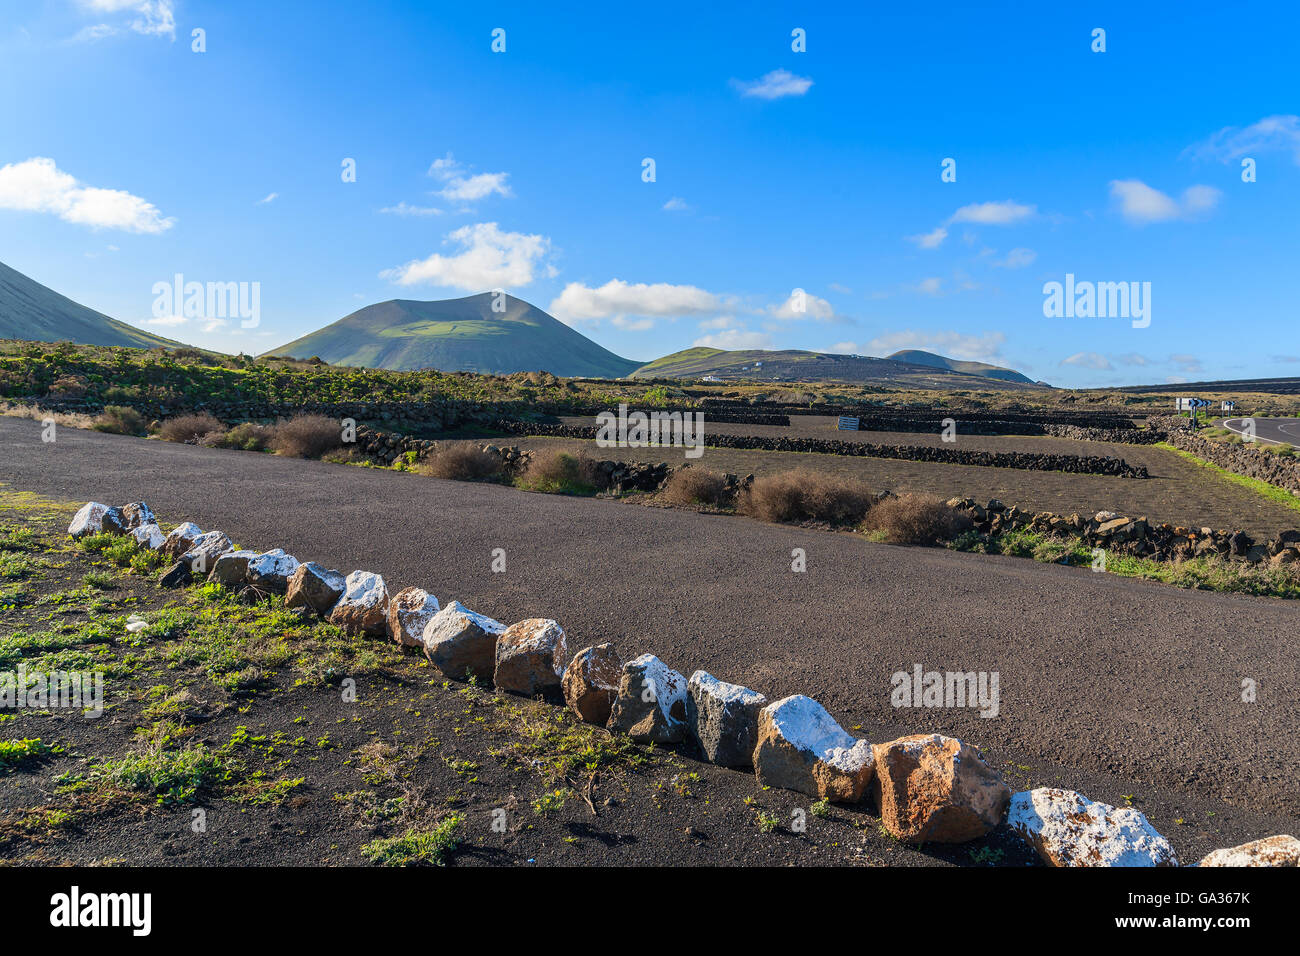 Rural road in La Geria vineyards, Lanzarote, Canary Islands, Spain Stock Photo